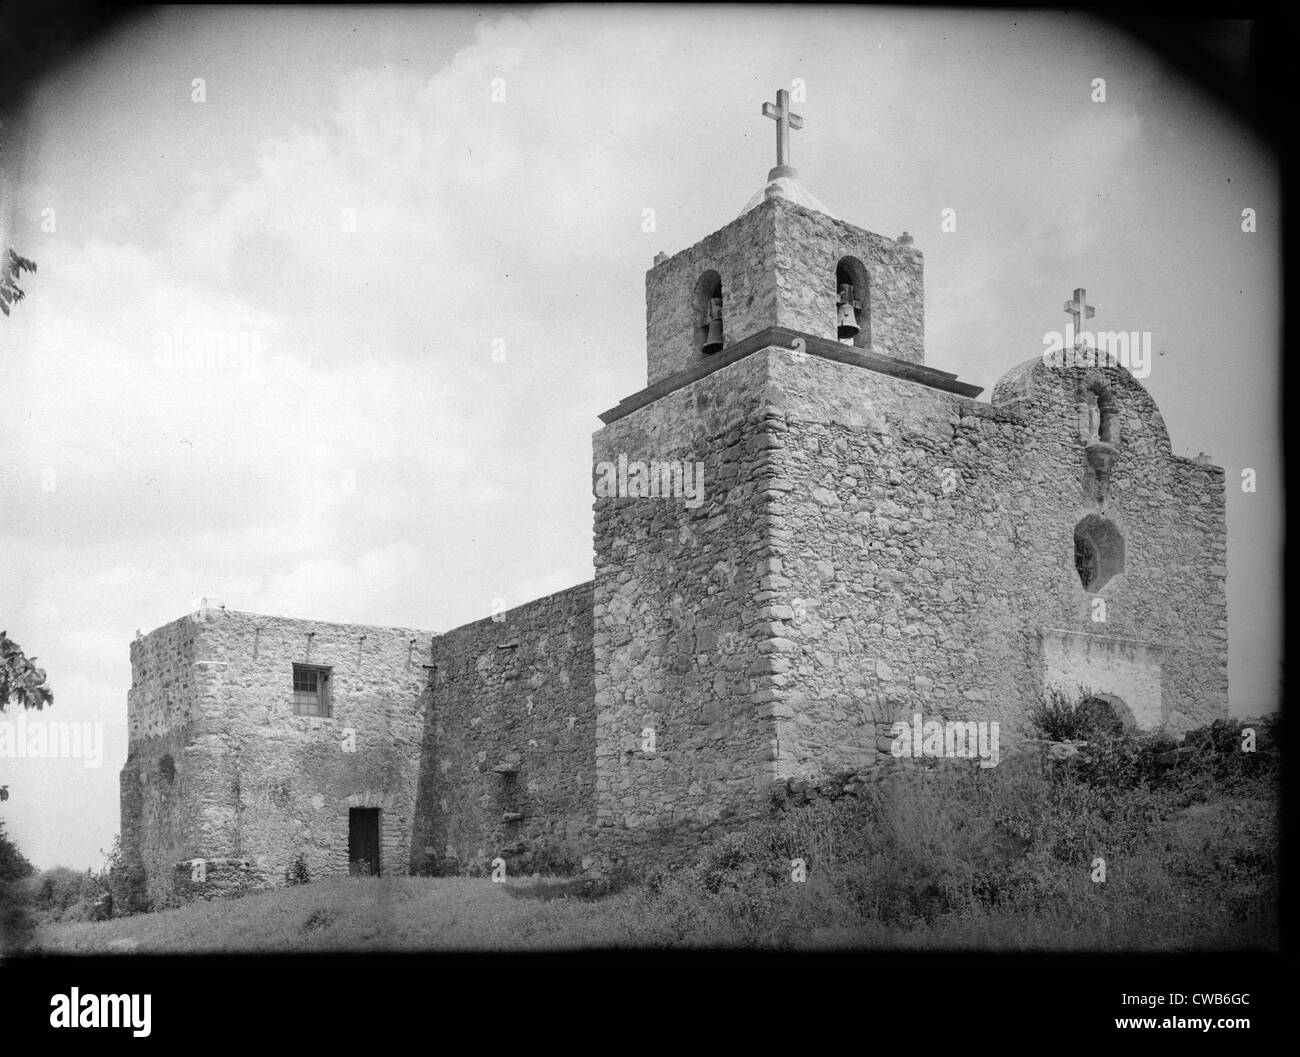 La Bahia Presidio Kapelle, Goliad, Texas. Hier wurden die texianisches Gefangene vor massakriert von der mexikanischen Armee unter Stockfoto